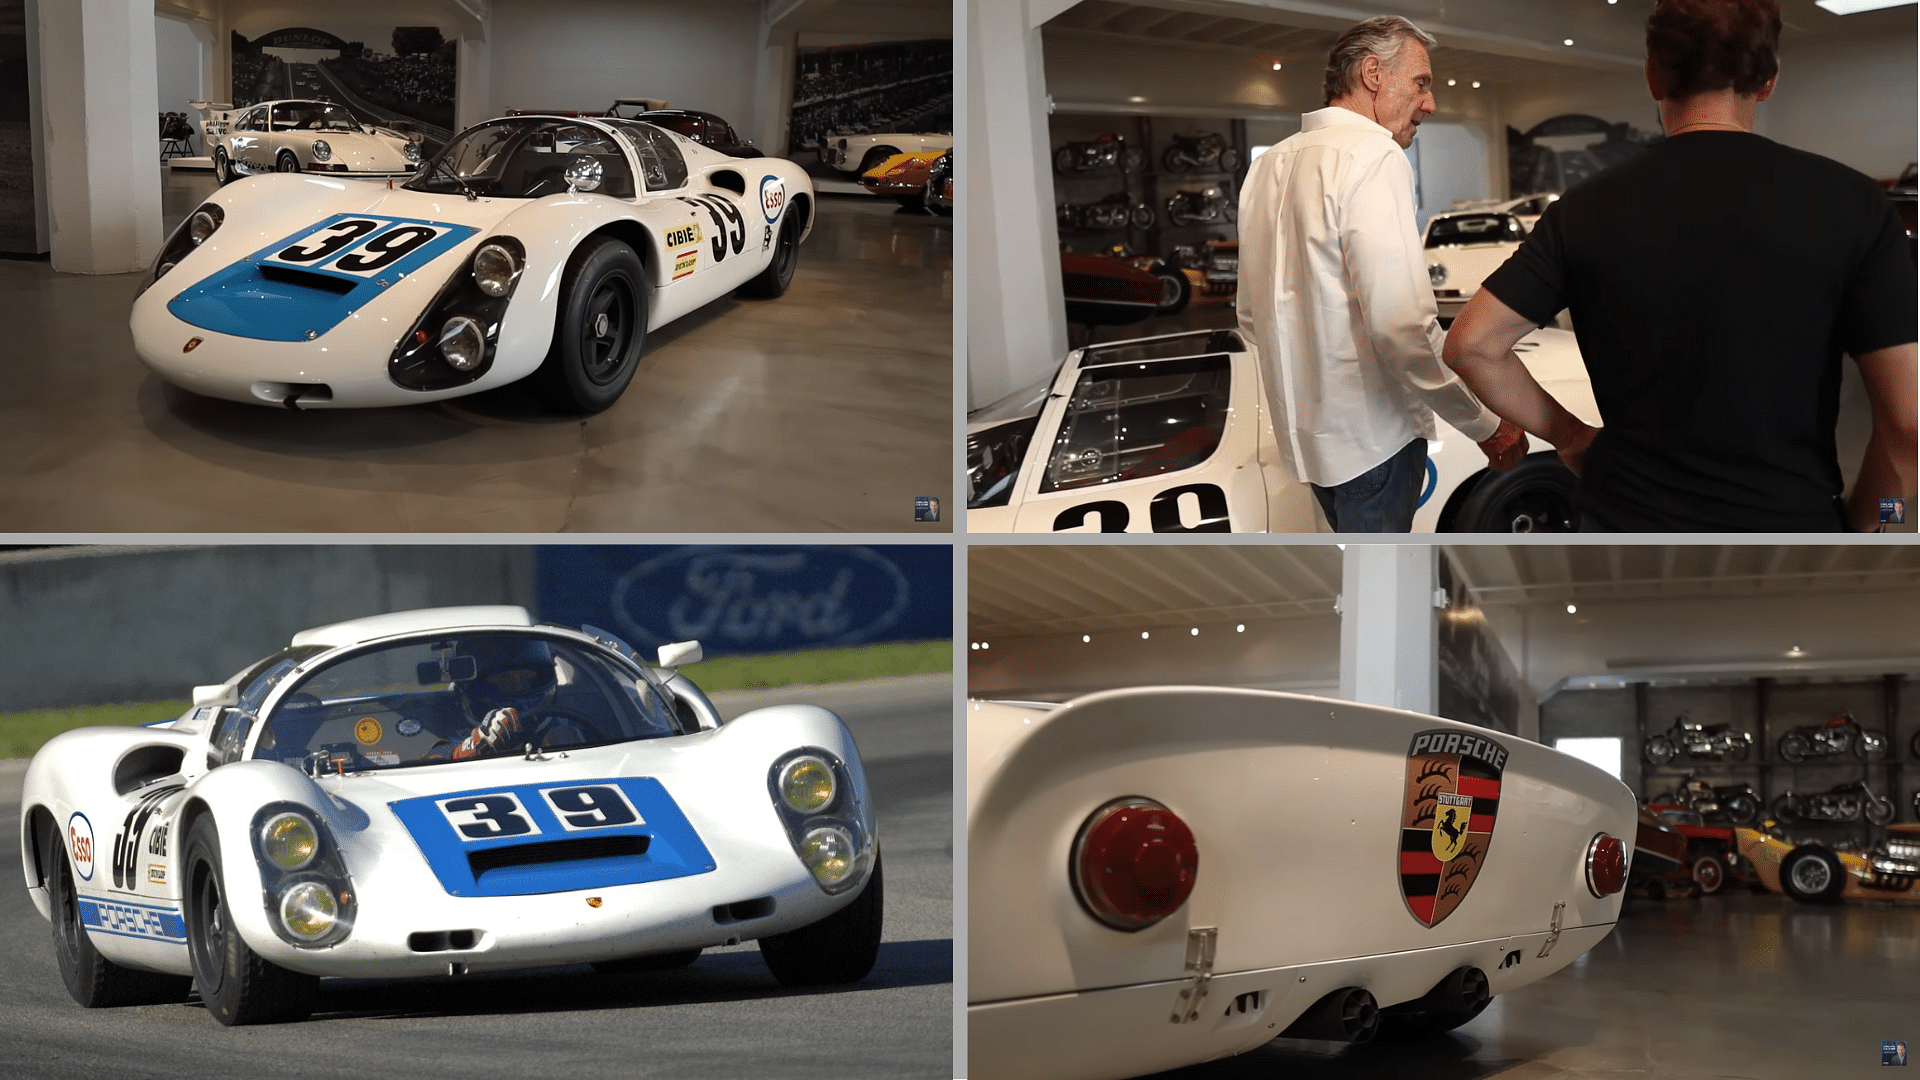 Bruce Meyer's 1967 Porsche 910